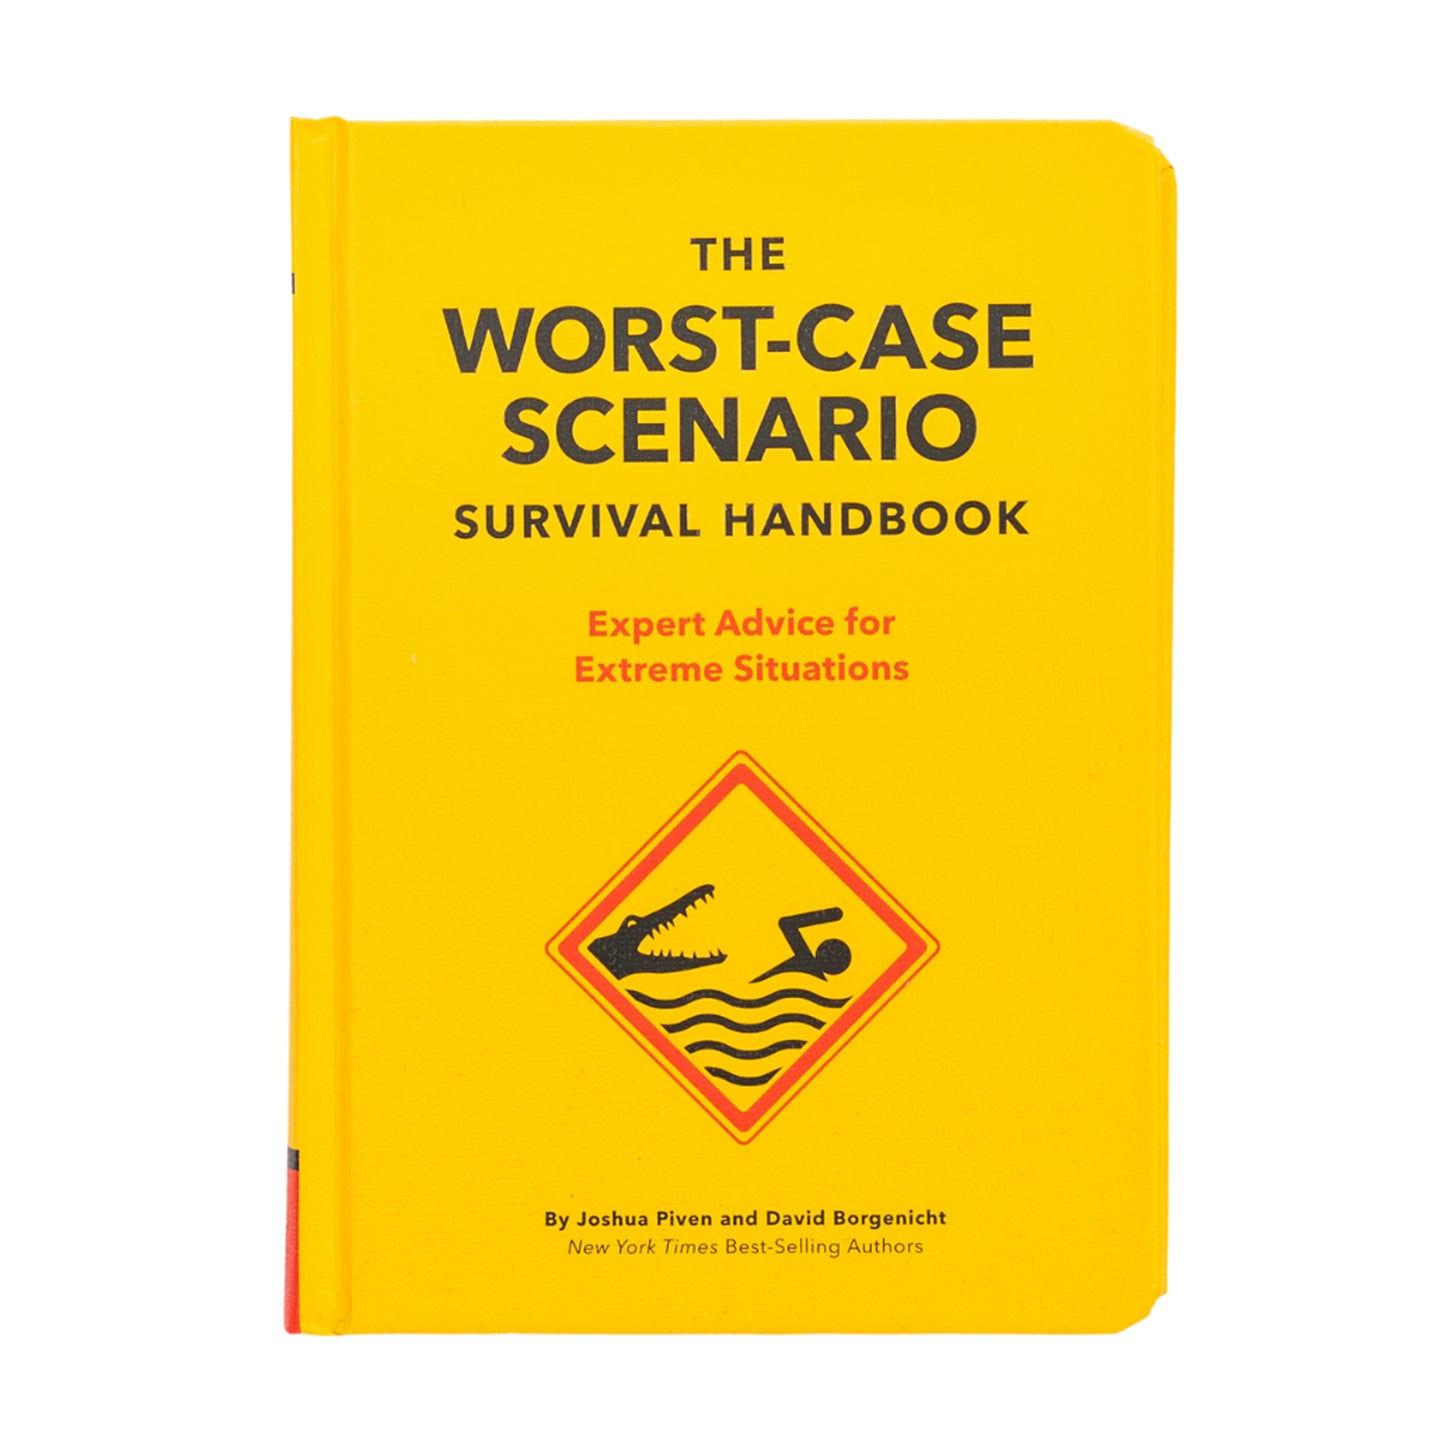 The Worst Case Scenario: Survival Handbook